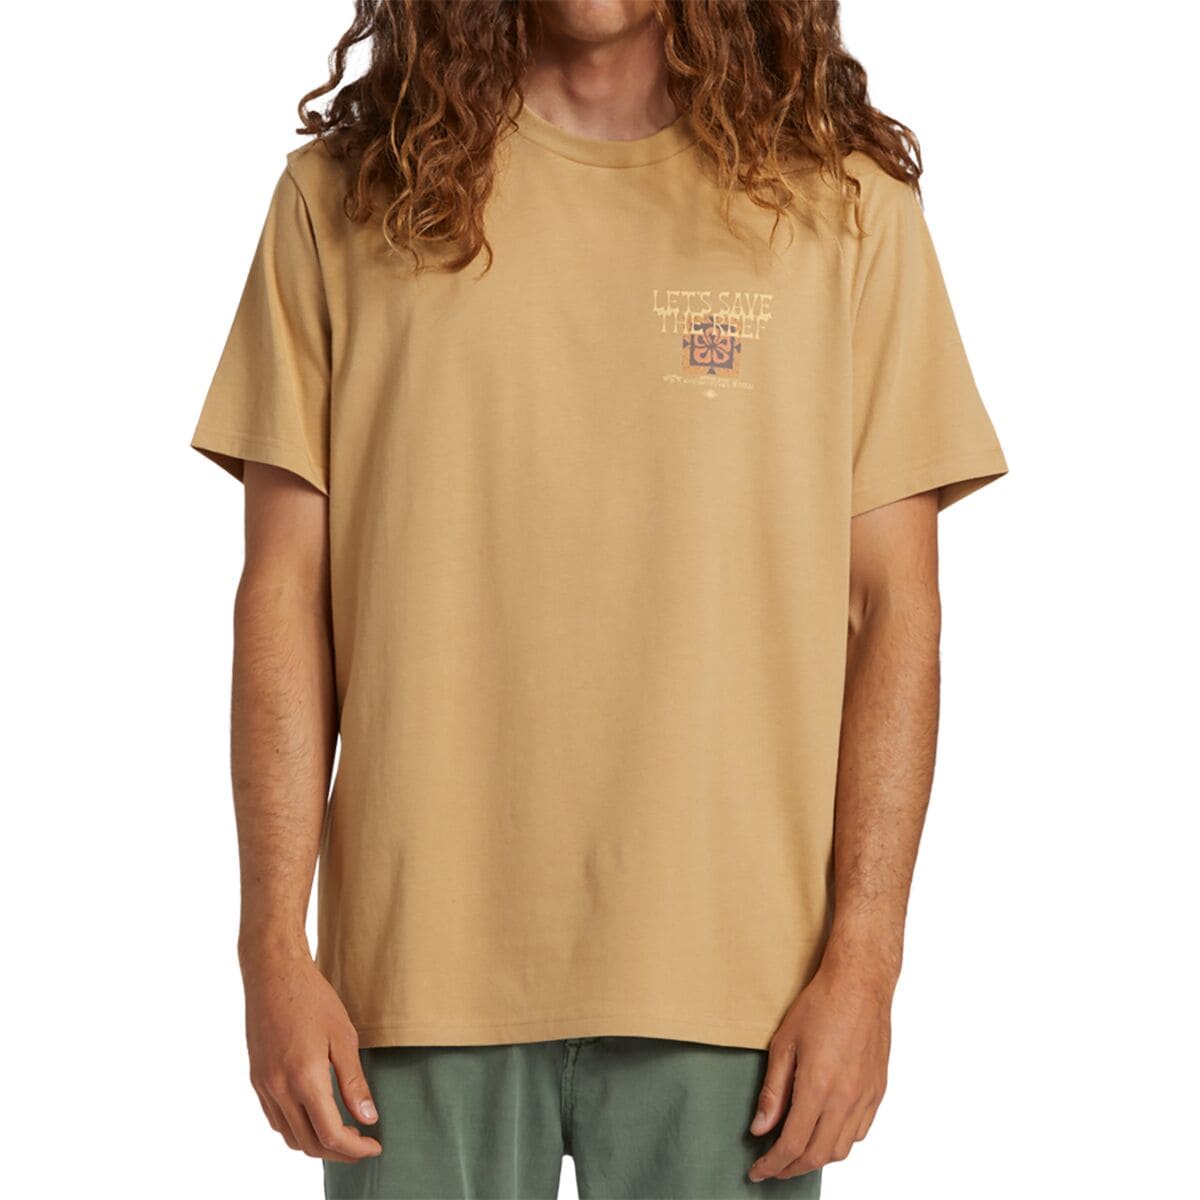 CG Tiki Reef Short-Sleeve Shirt - Men